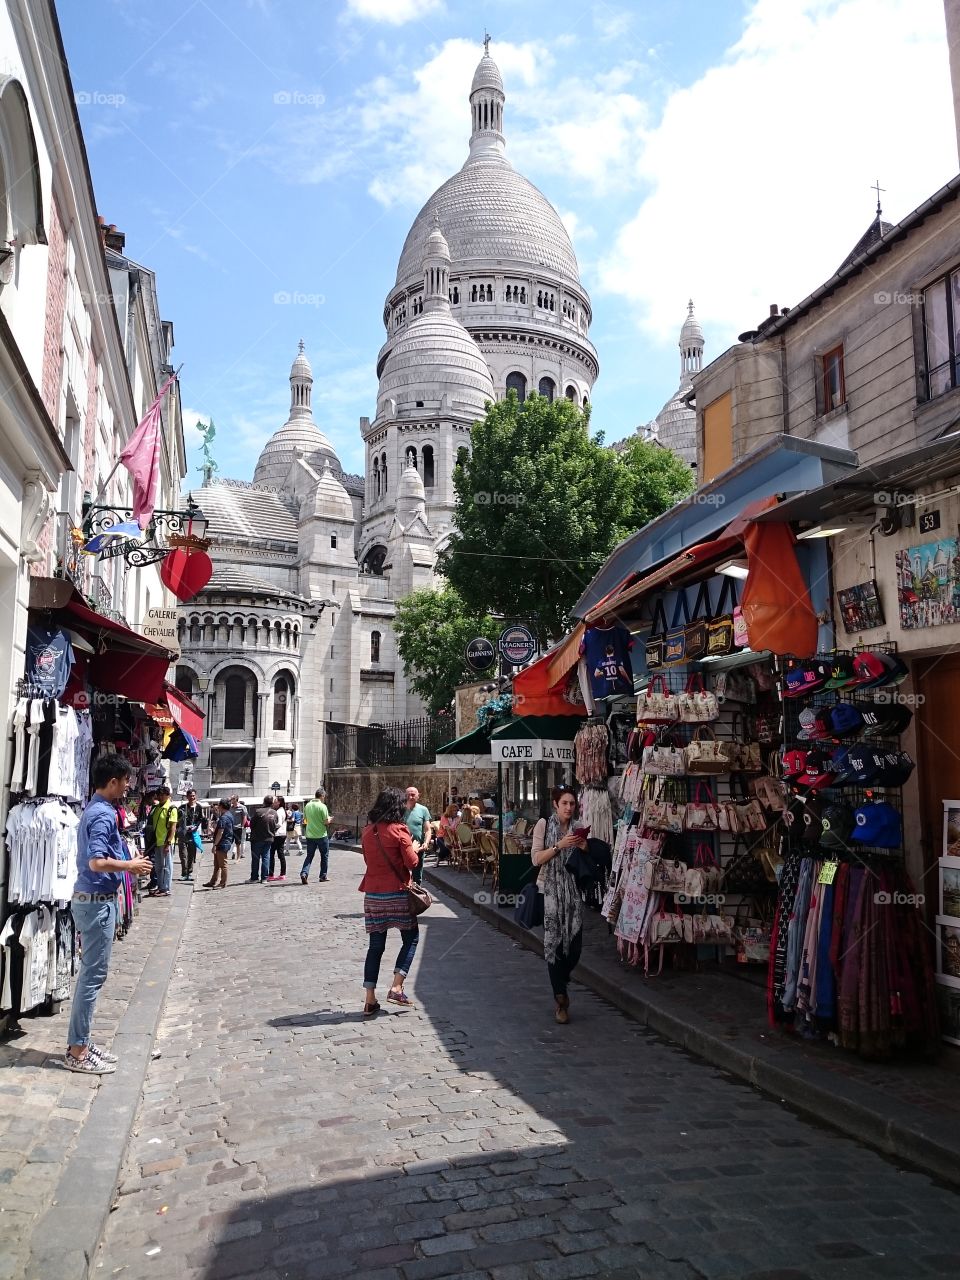 Paris, Montmartre, Sacre Coeur church